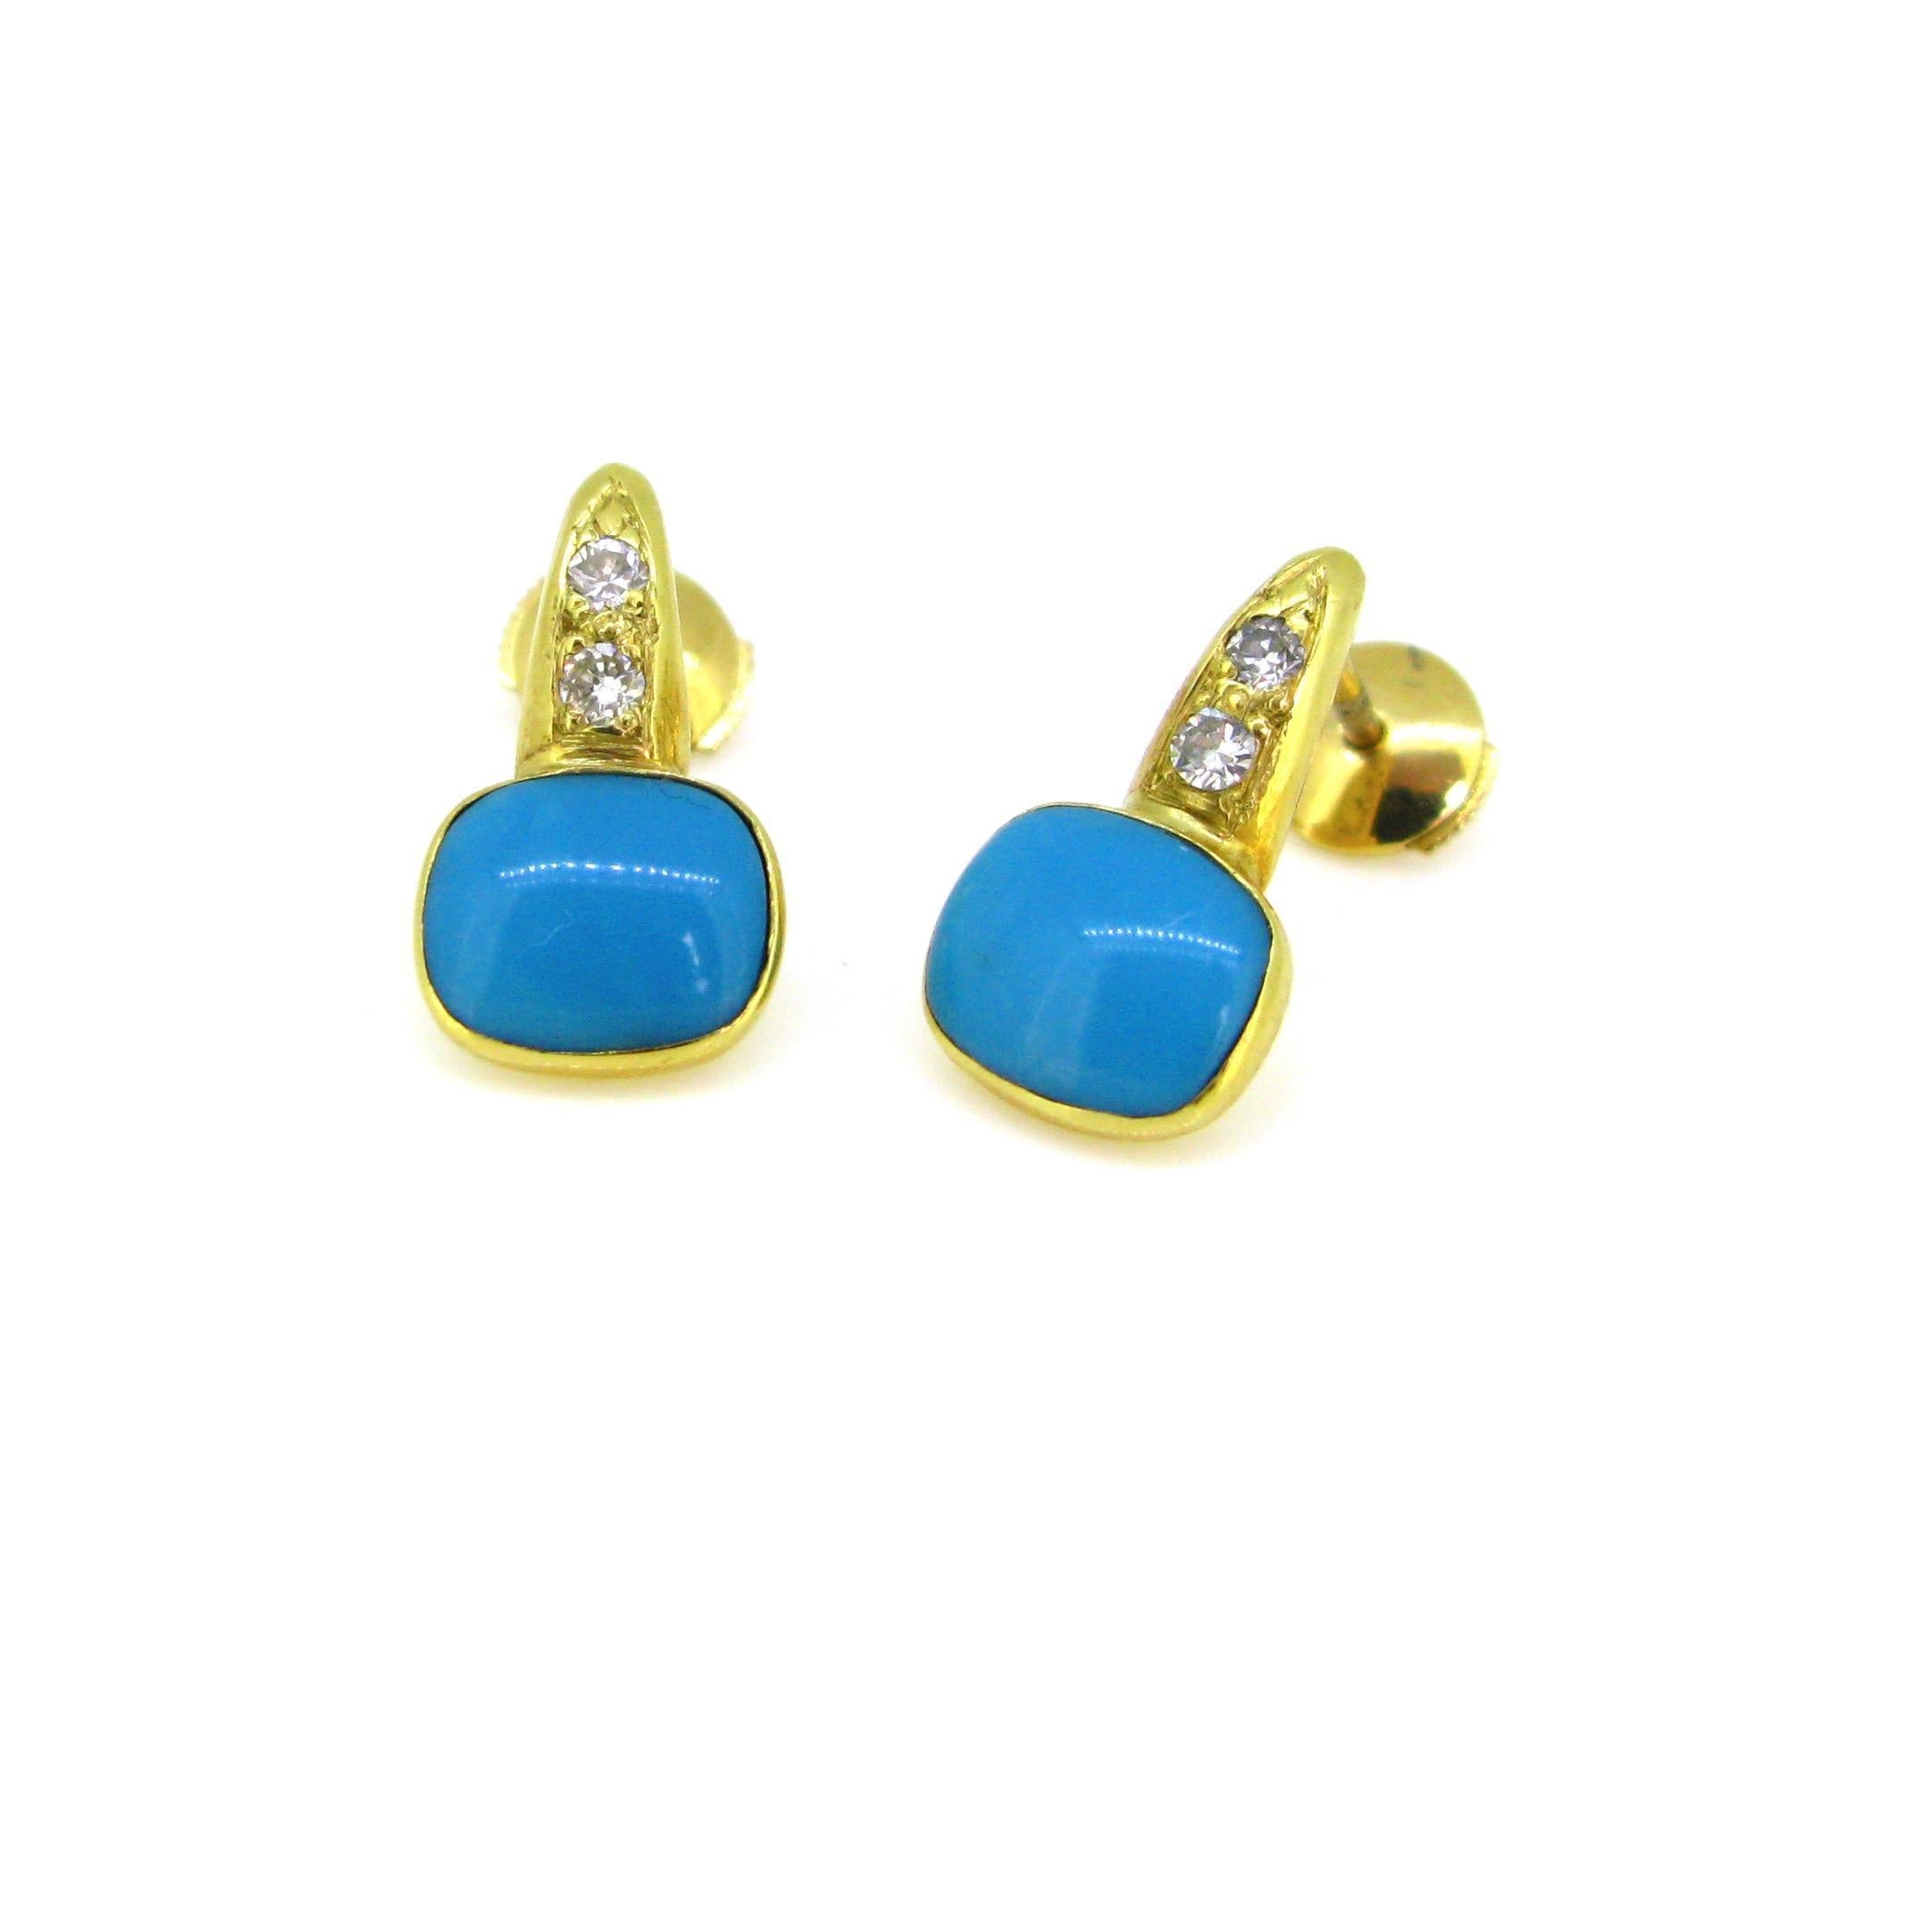 Cette paire de boucles d'oreilles est réalisée en or jaune 18 carats. Les clous sont sertis d'une belle turquoise naturelle. Elle a été testée comme une turquoise naturelle. La pierre précieuse de couleur bleu ciel est rehaussée de deux diamants